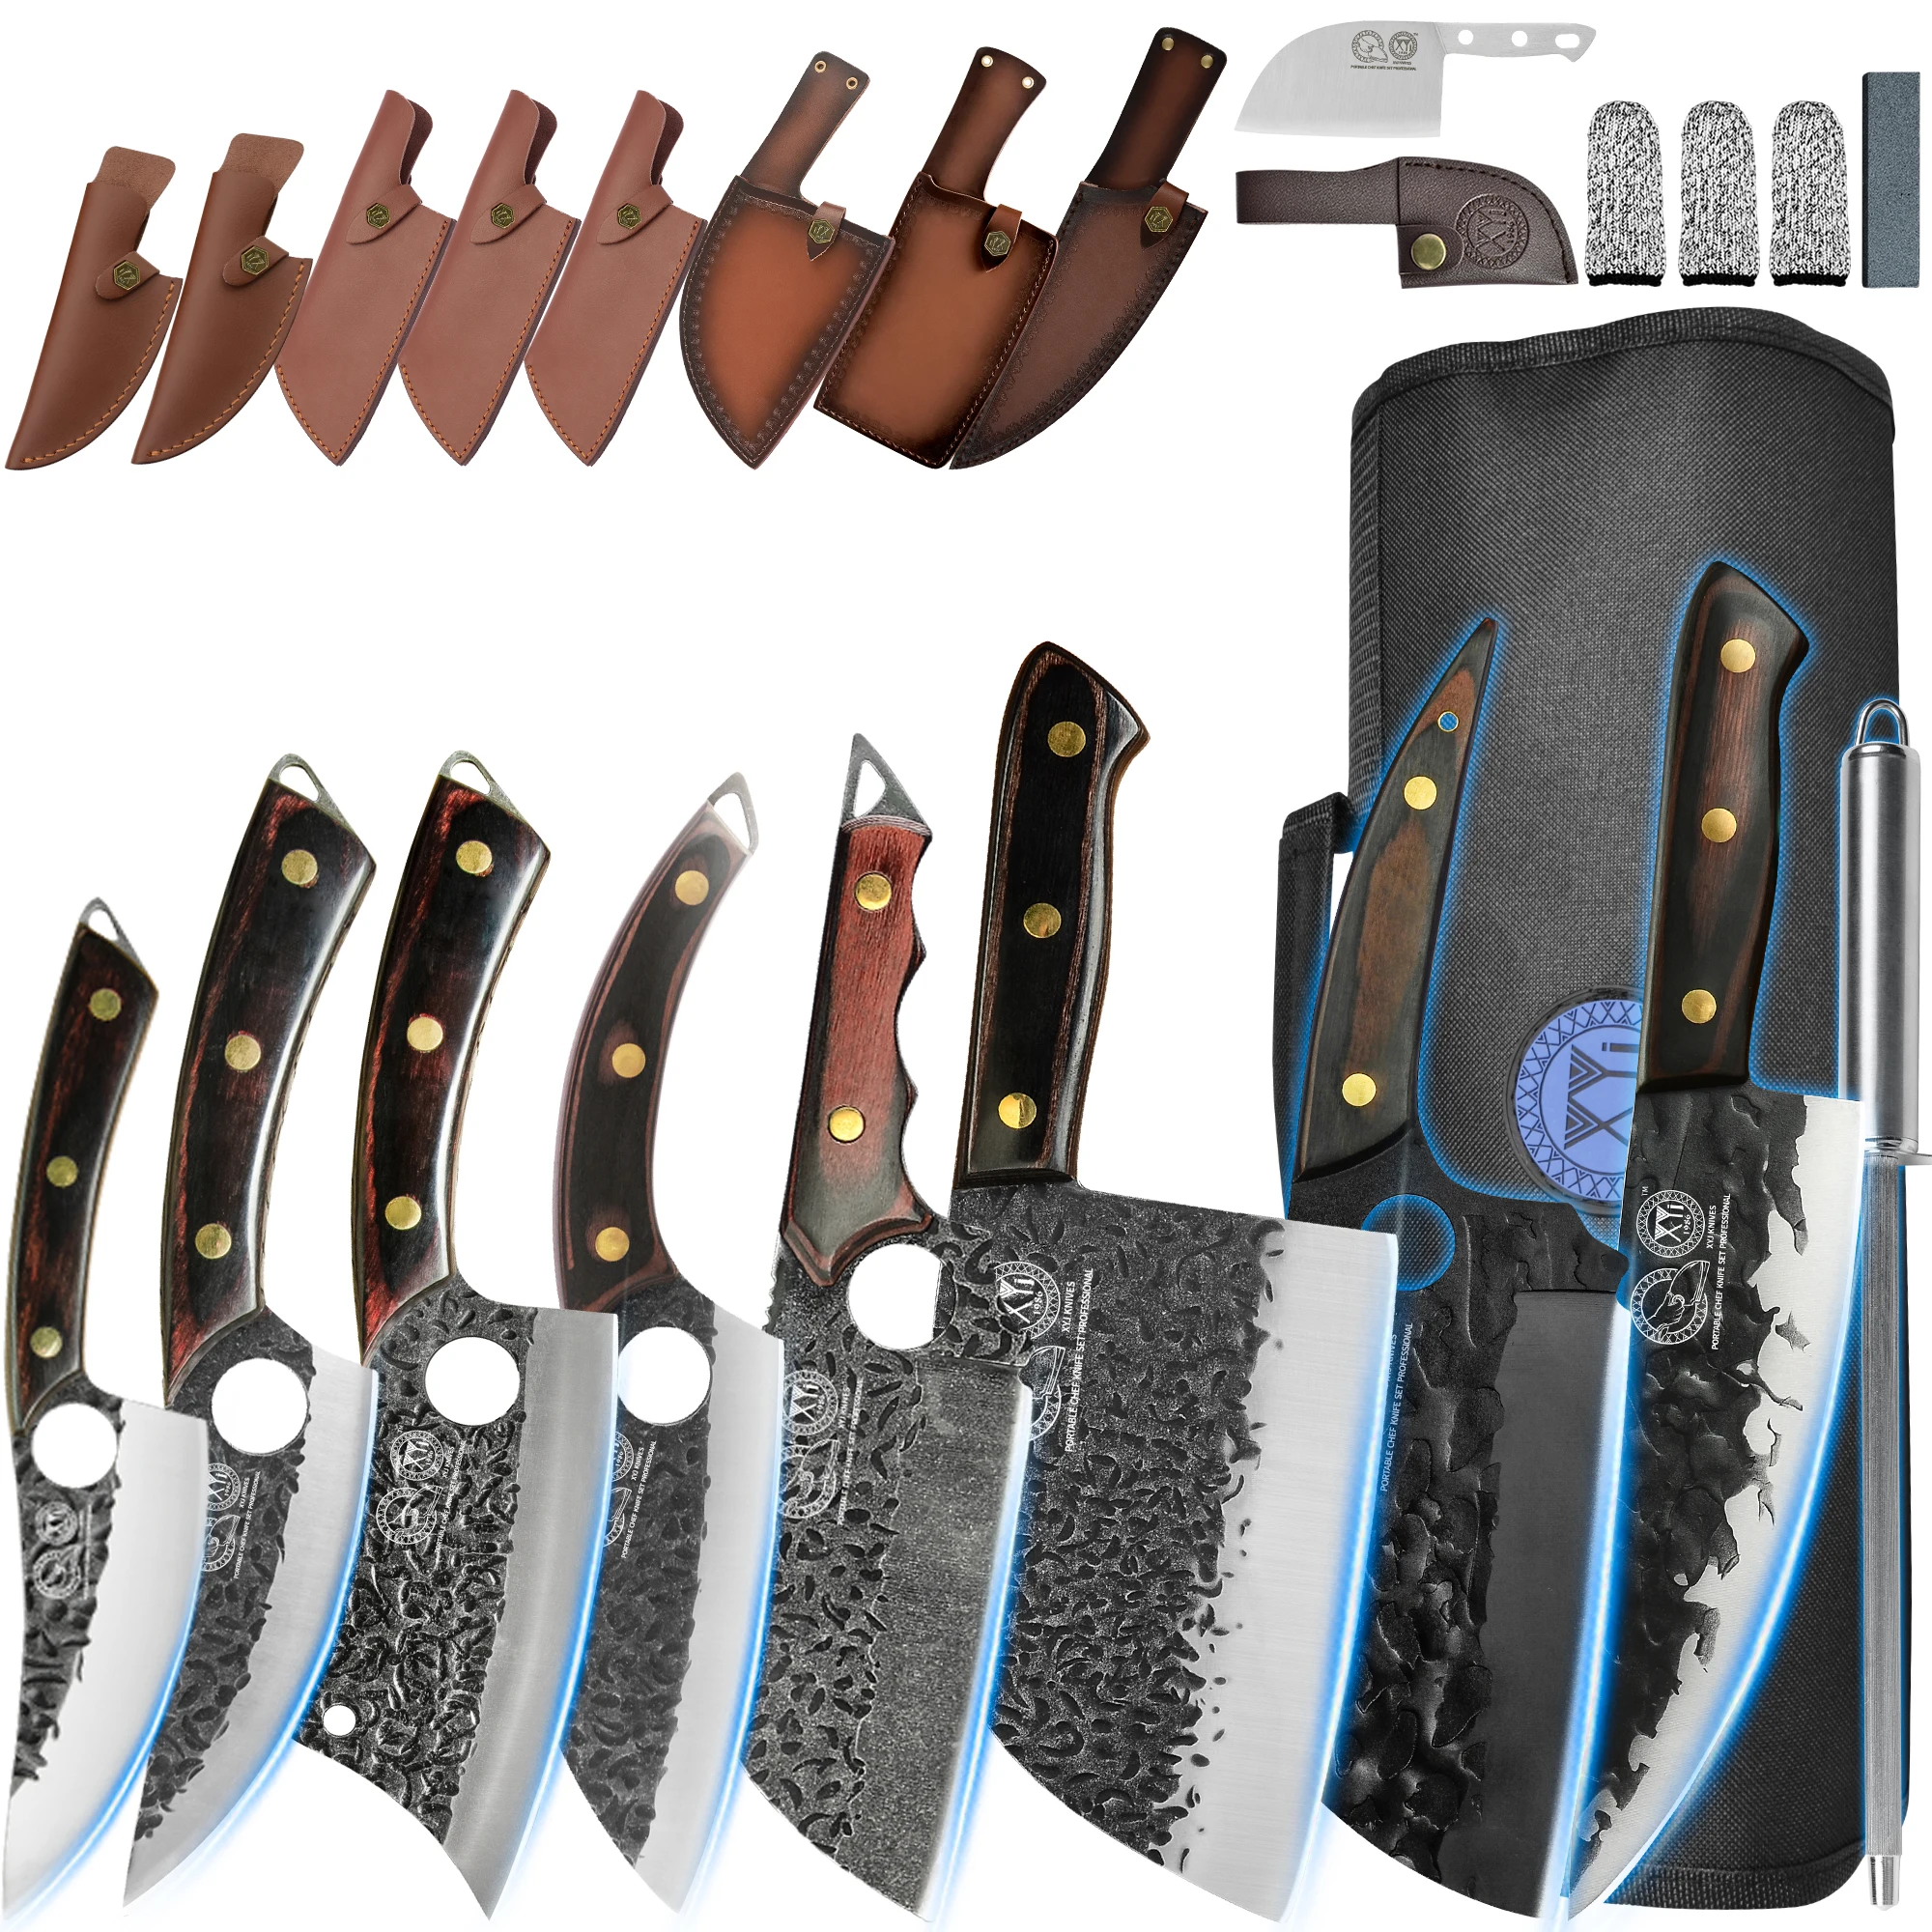 

Набор ножей для шеф-повара XYj из 8 предметов, ножи из нержавеющей стали с кожаным футляром и ремнем, с деревянной ручкой, с сумкой, для кемпинга